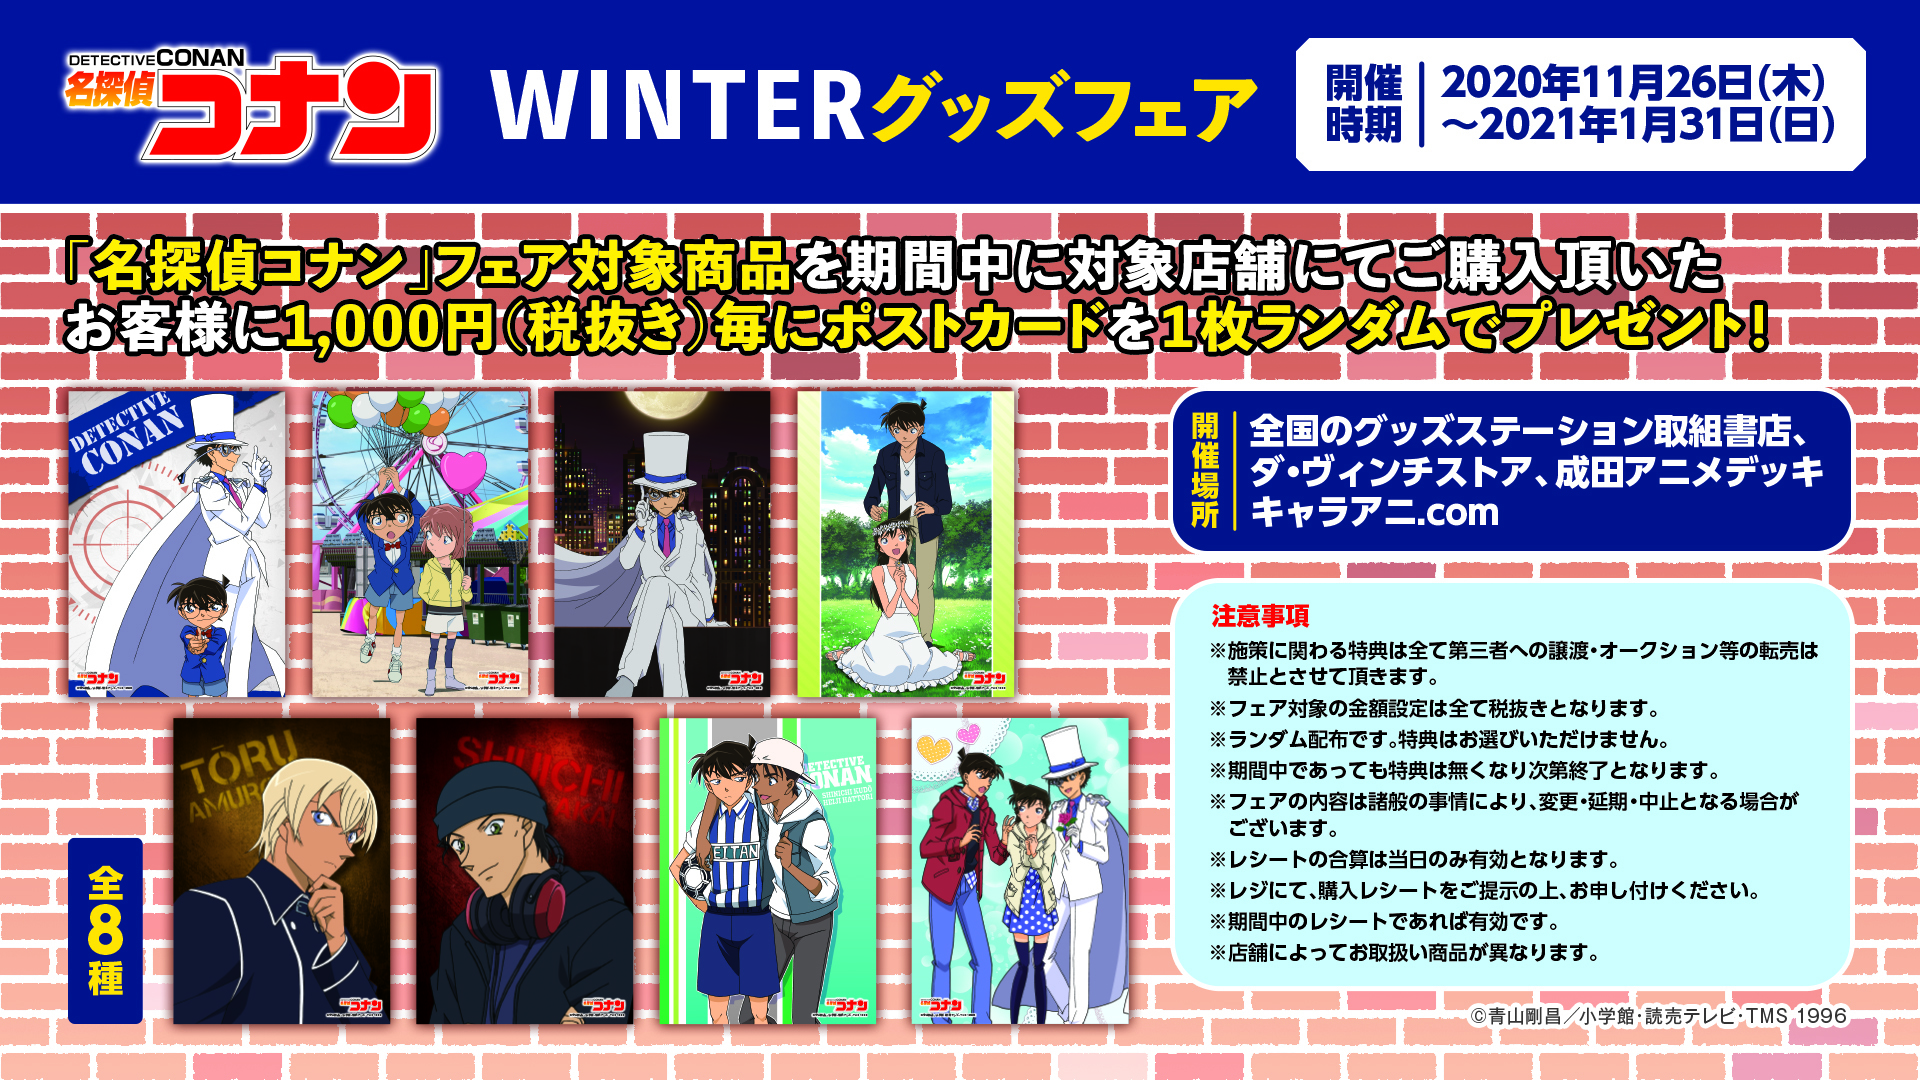 名探偵コナン Winterグッズフェア 11月26日 木 本日より開催決定 株式会社kadokawaのプレスリリース